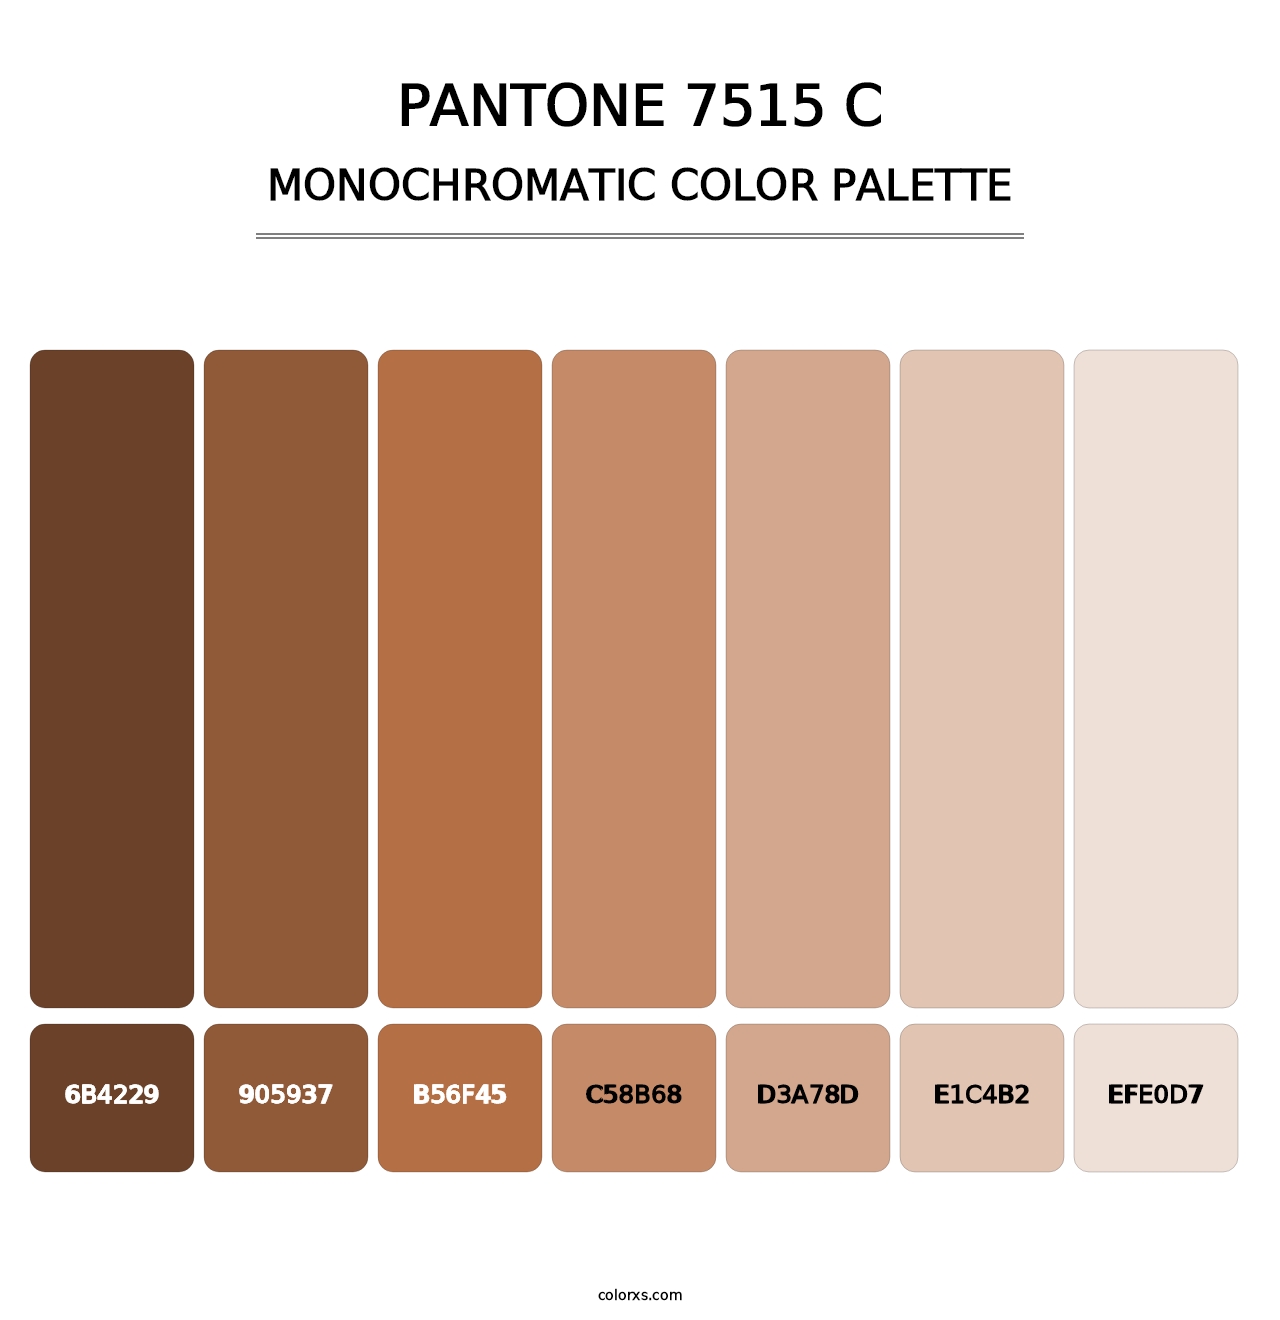 PANTONE 7515 C - Monochromatic Color Palette